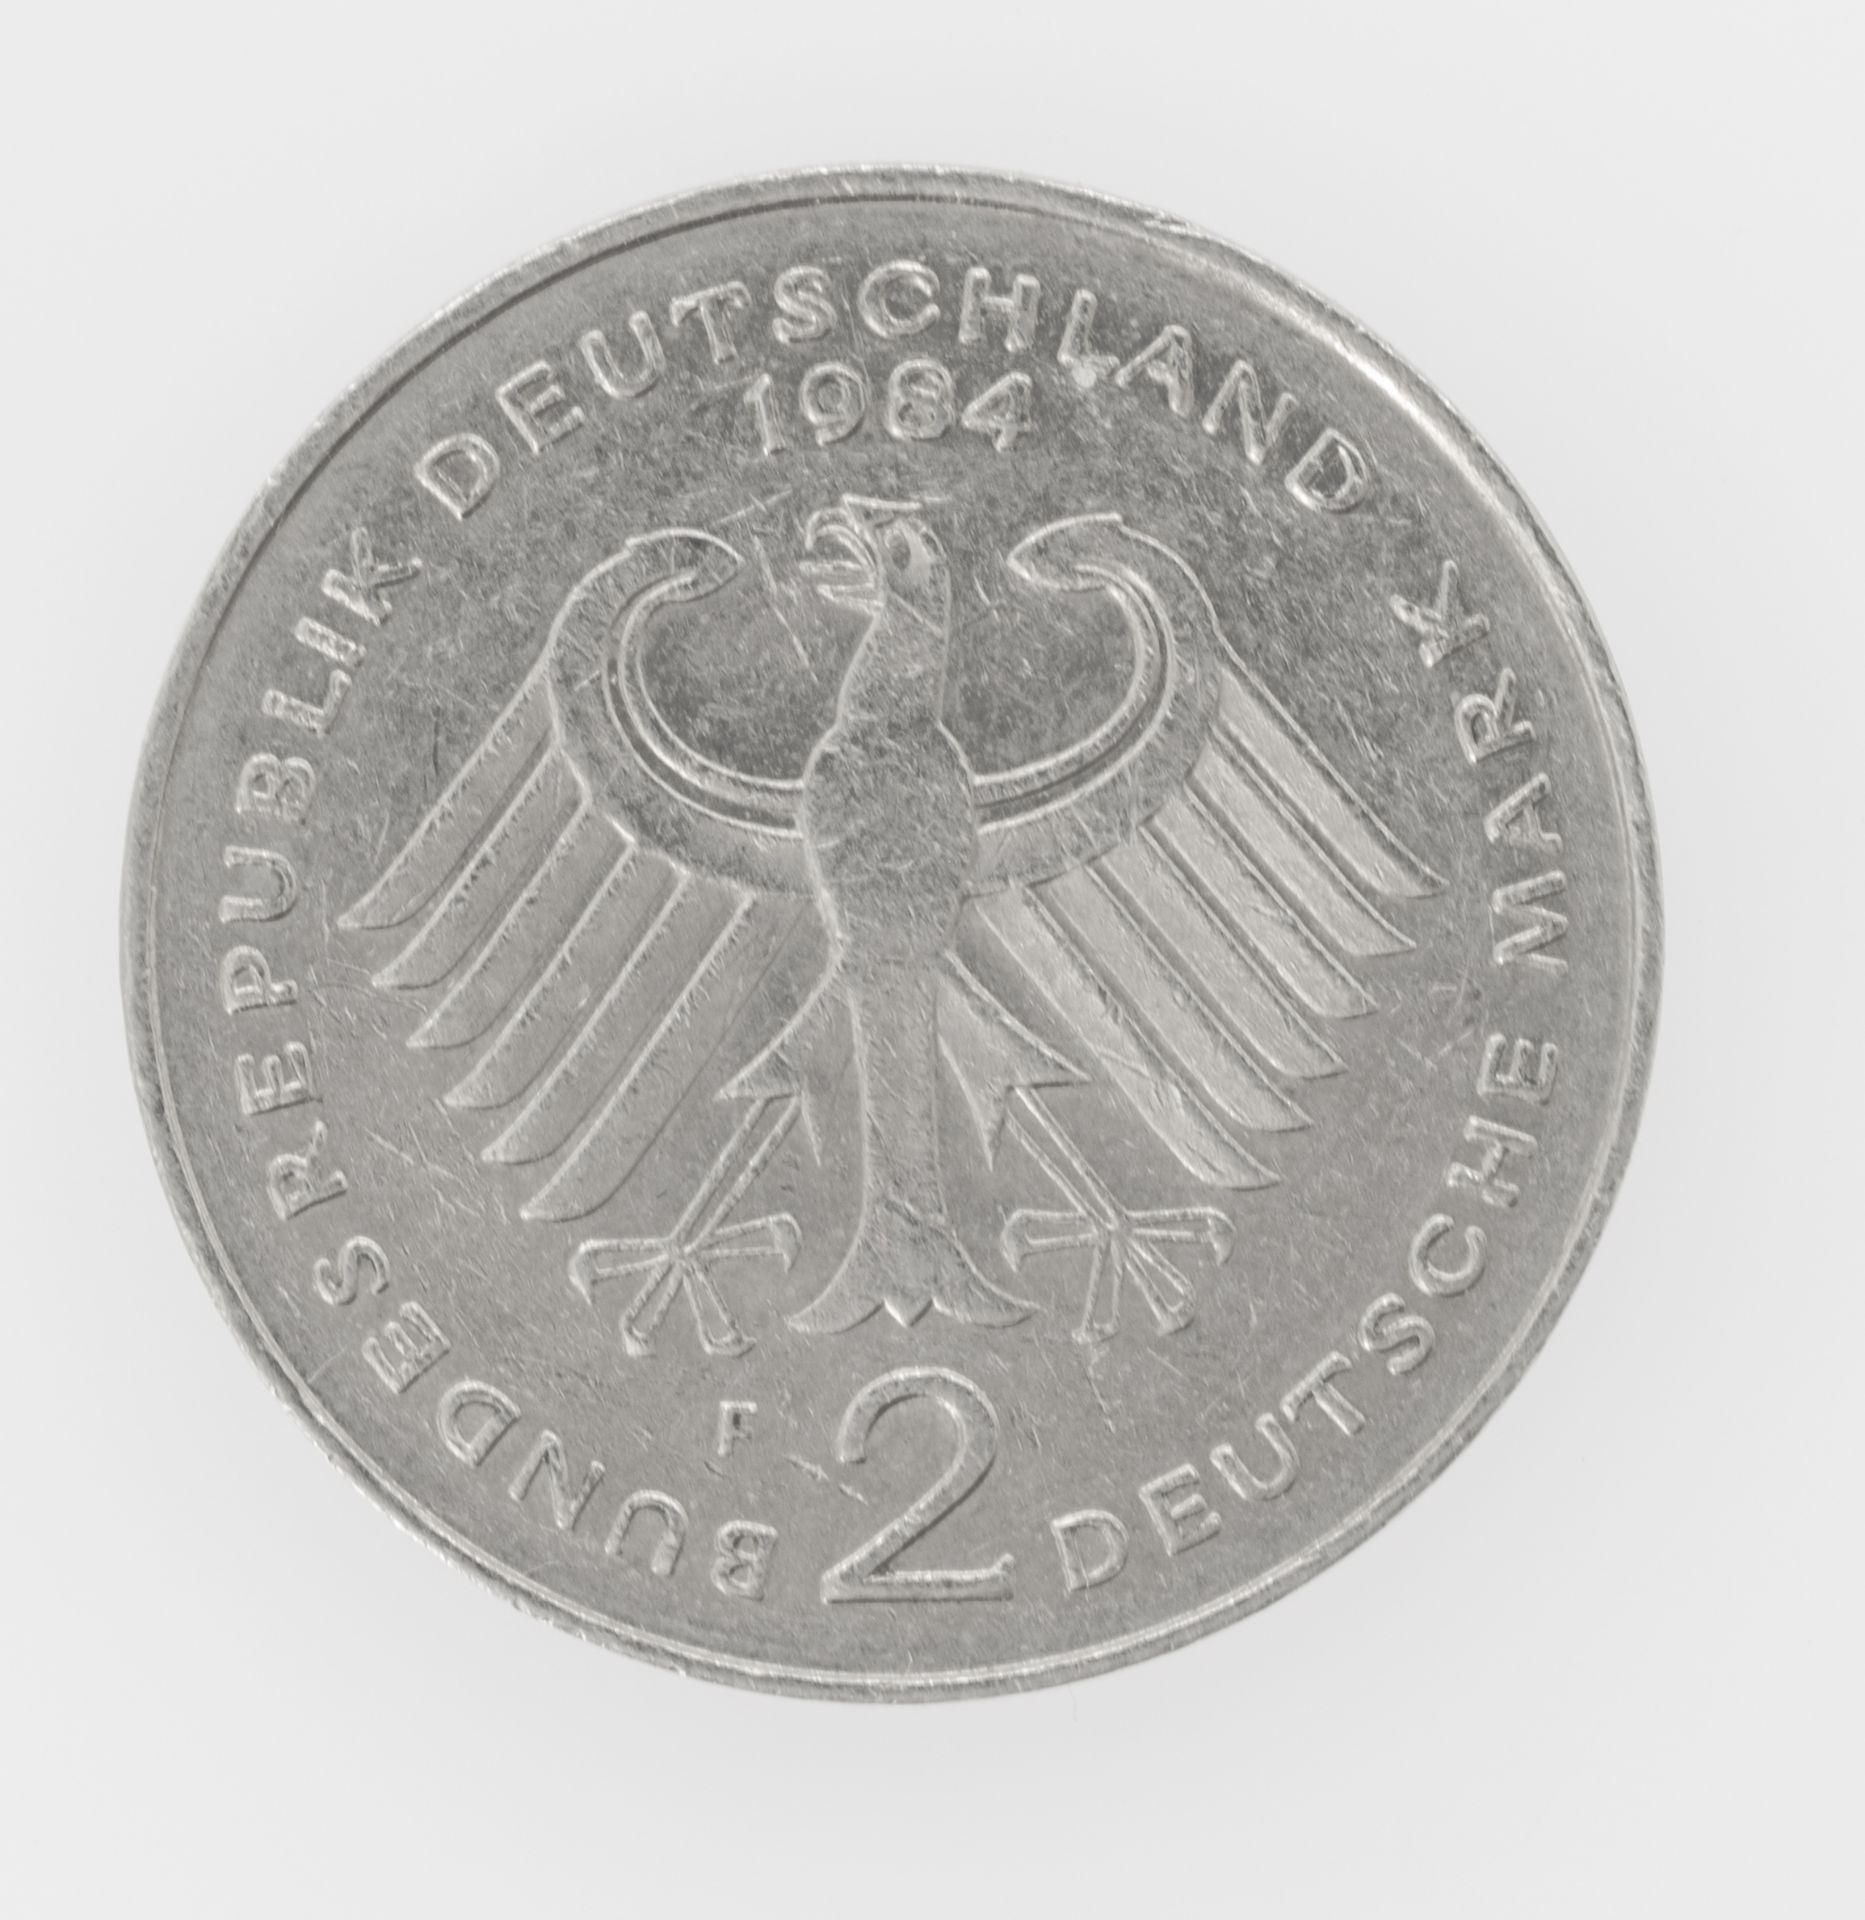 Deutschland 1984 F, 2.- DM - Münze "Konrad Adenauer". Magnetisch. - Bild 2 aus 3